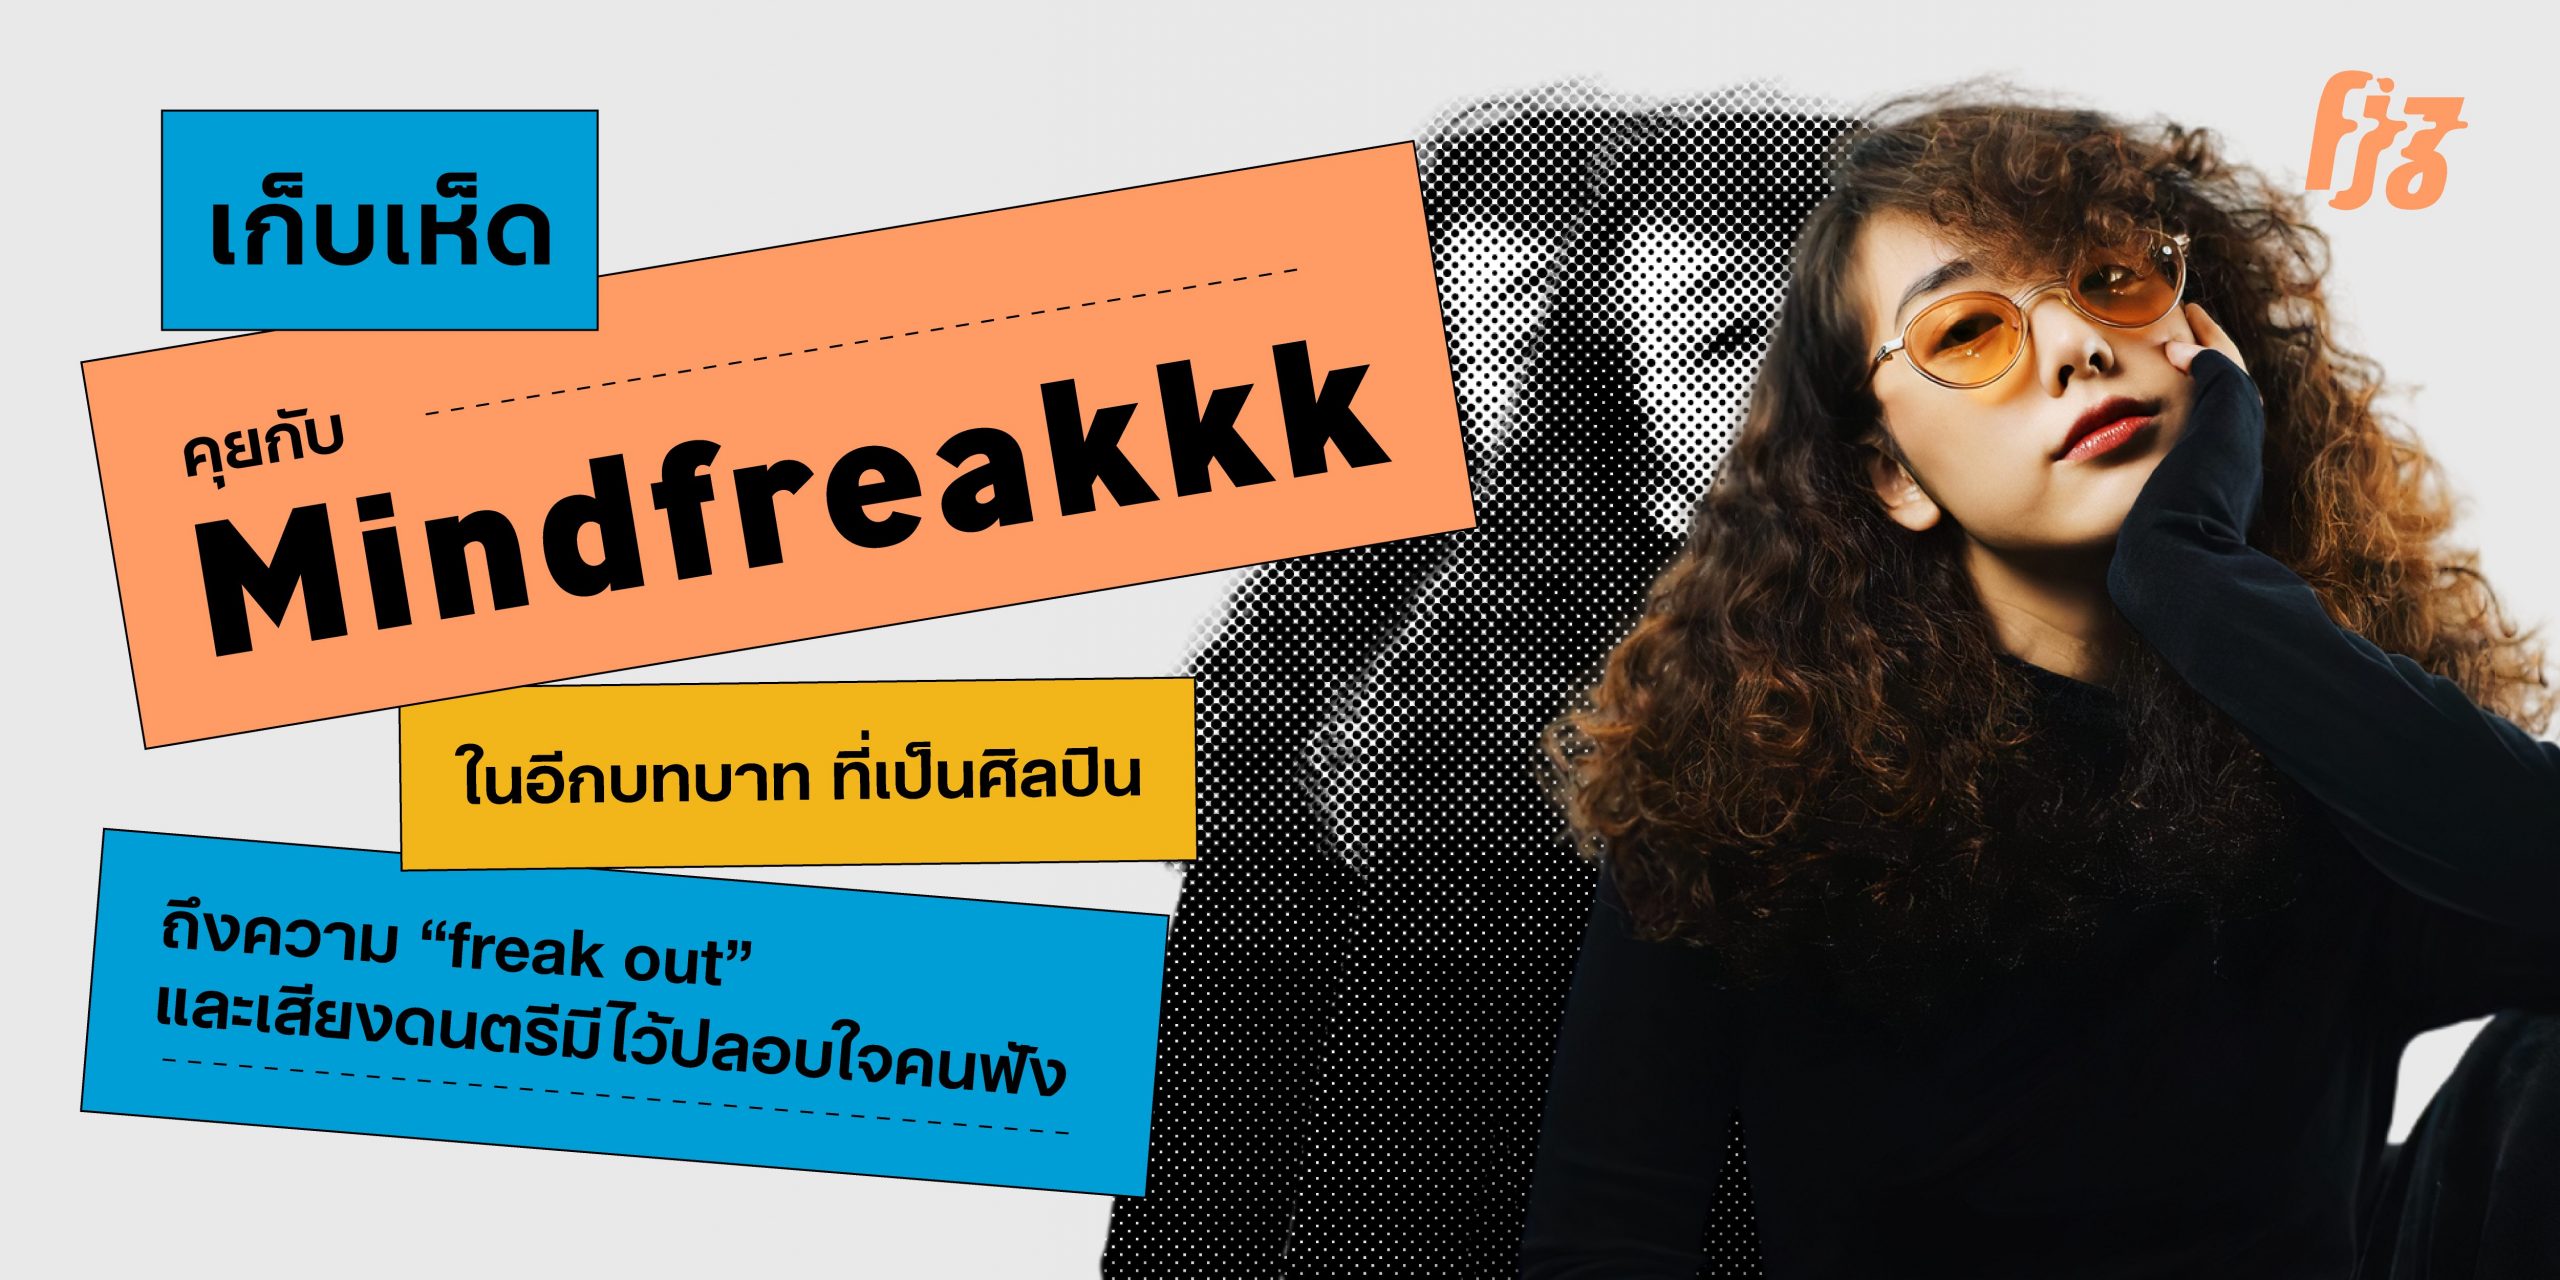 คุยกับ “Mindfreakkk” ในอีกบทบาทที่เป็นศิลปิน ถึงความ “freak out” และเสียงดนตรีมีไว้ปลอบใจคนฟัง